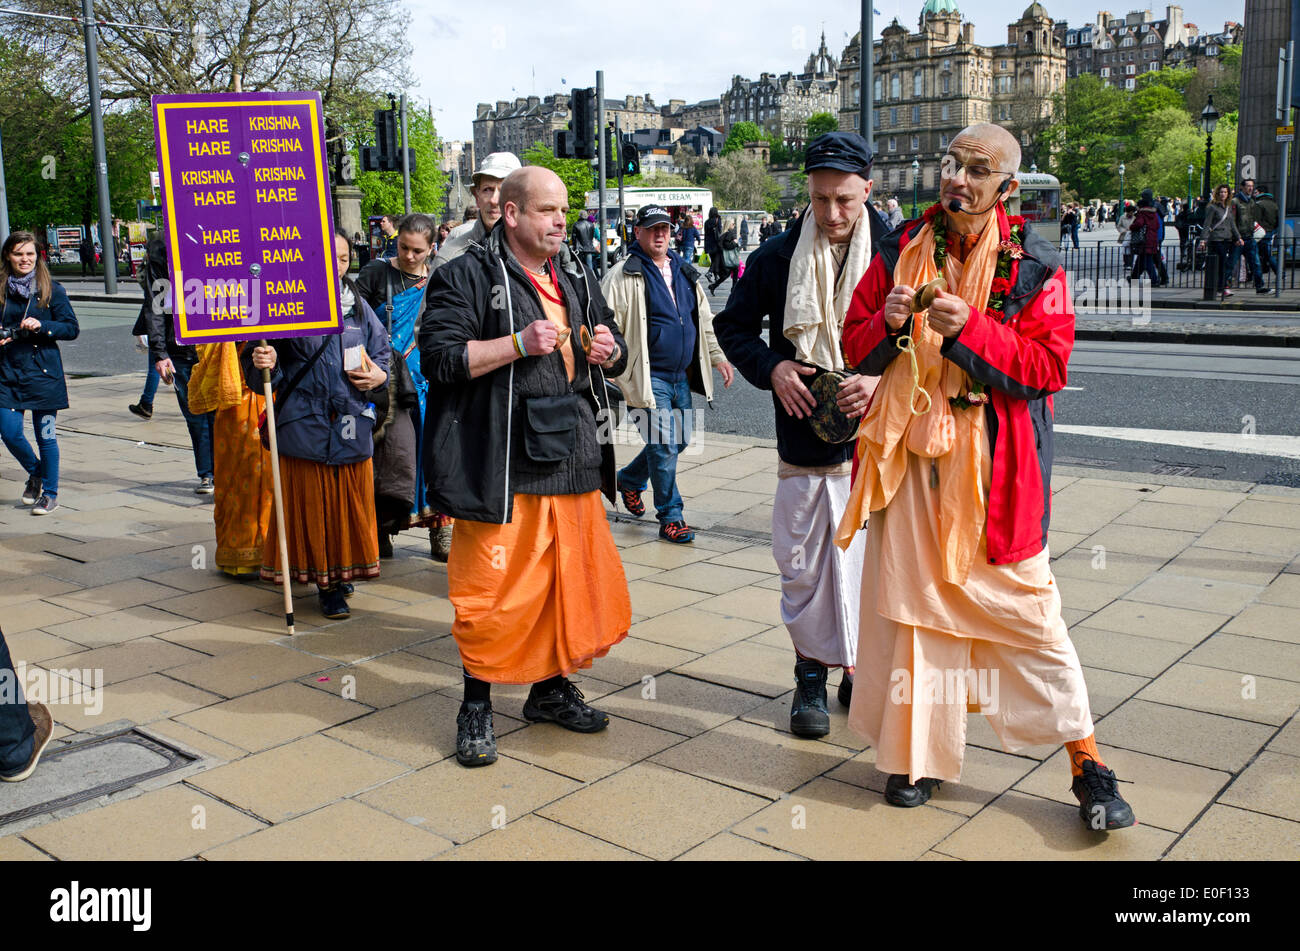 Les membres du mouvement Hare Krishna chanter comme ils font leur chemin le long de la rue Princes Street à Édimbourg, Écosse, Royaume-Uni. Banque D'Images